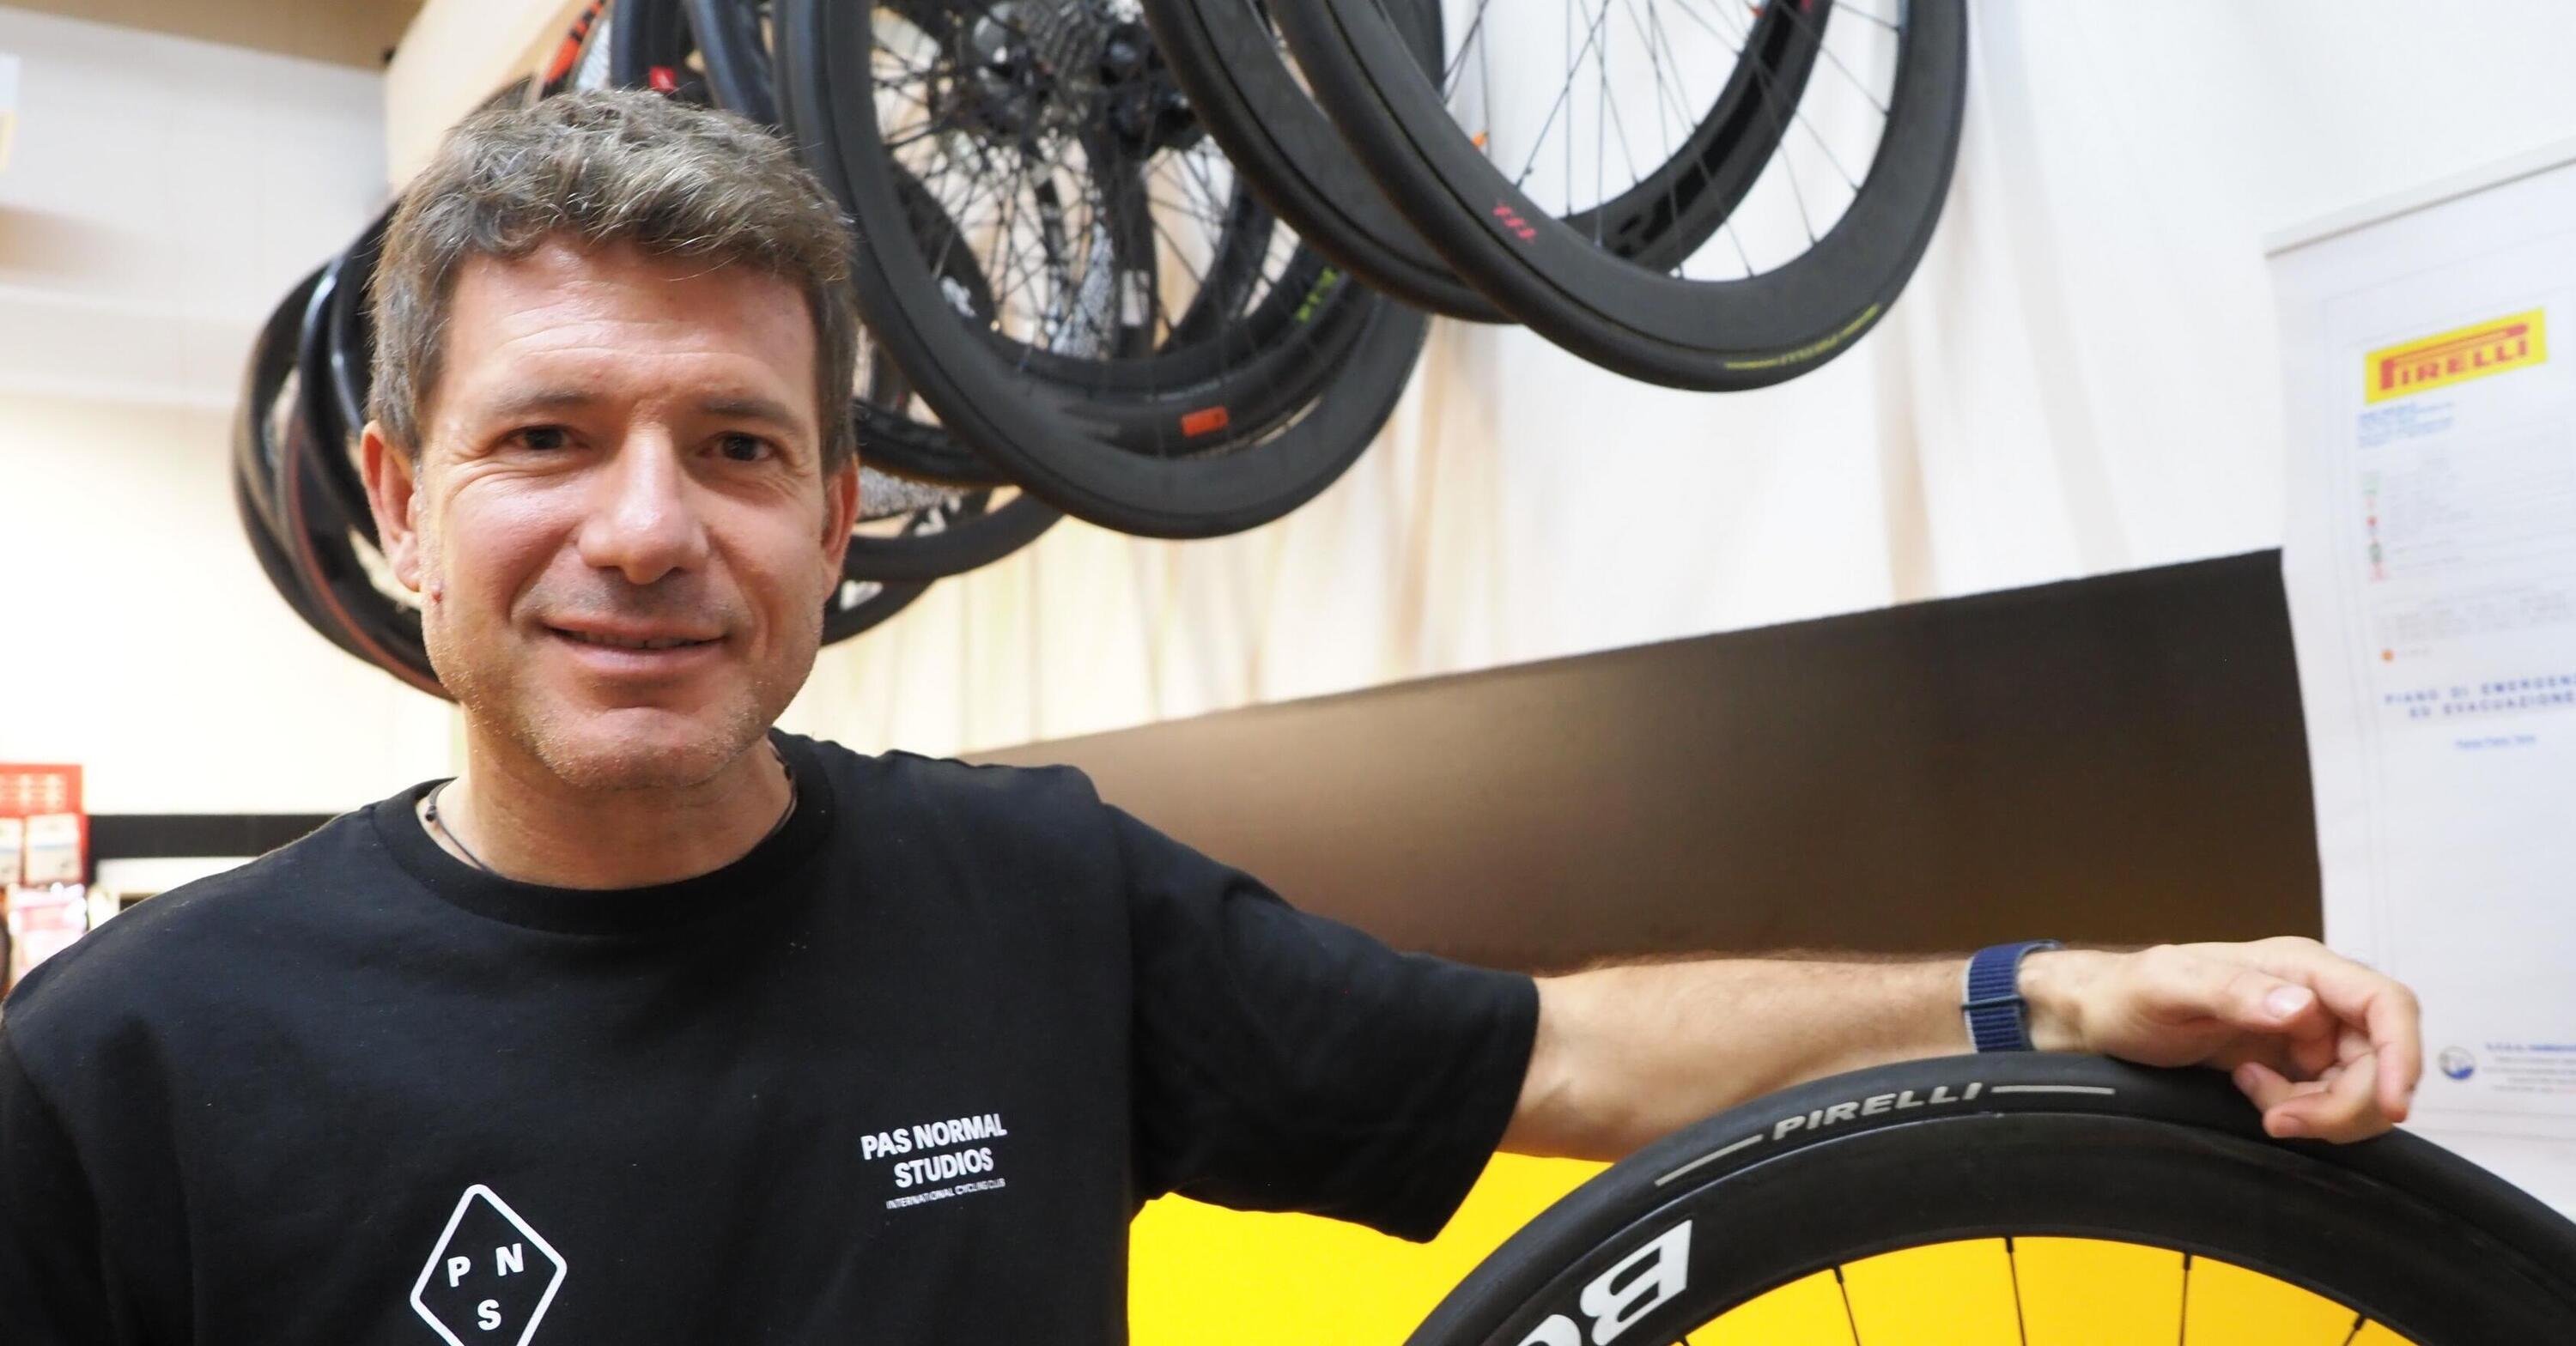 Bollate, le bici e il bike boom: intervista a Matteo Barbieri, Responsabile Divisione Cycling di Pirelli